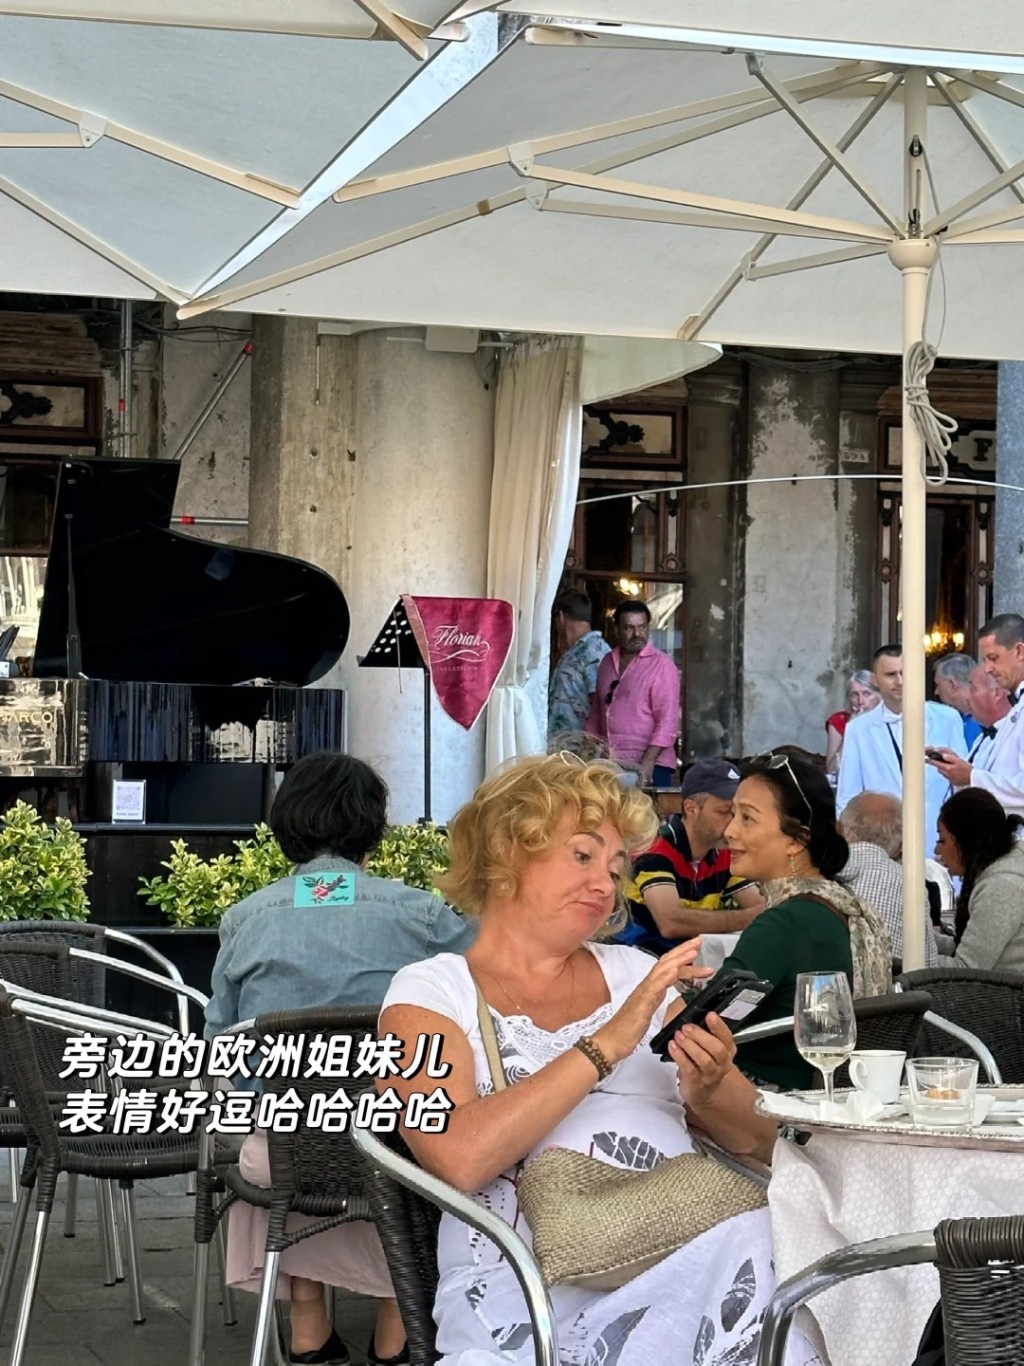 近日有網民在小紅書貼出在意大利巧遇劉亦菲和媽媽劉曉莉。